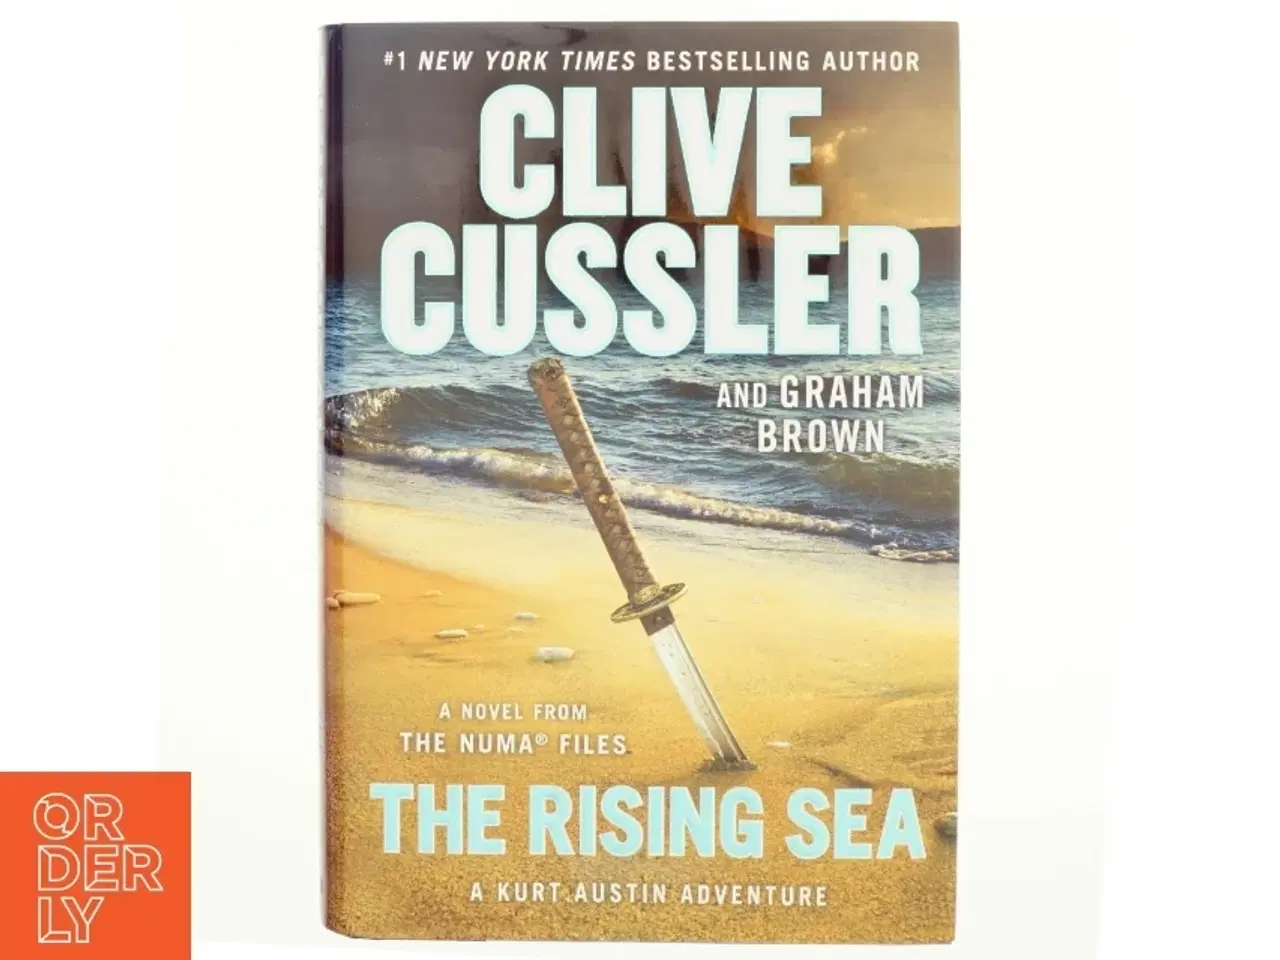 Billede 1 - The rising sea : a novel from the NUMA files af Clive Cussler (Bog)